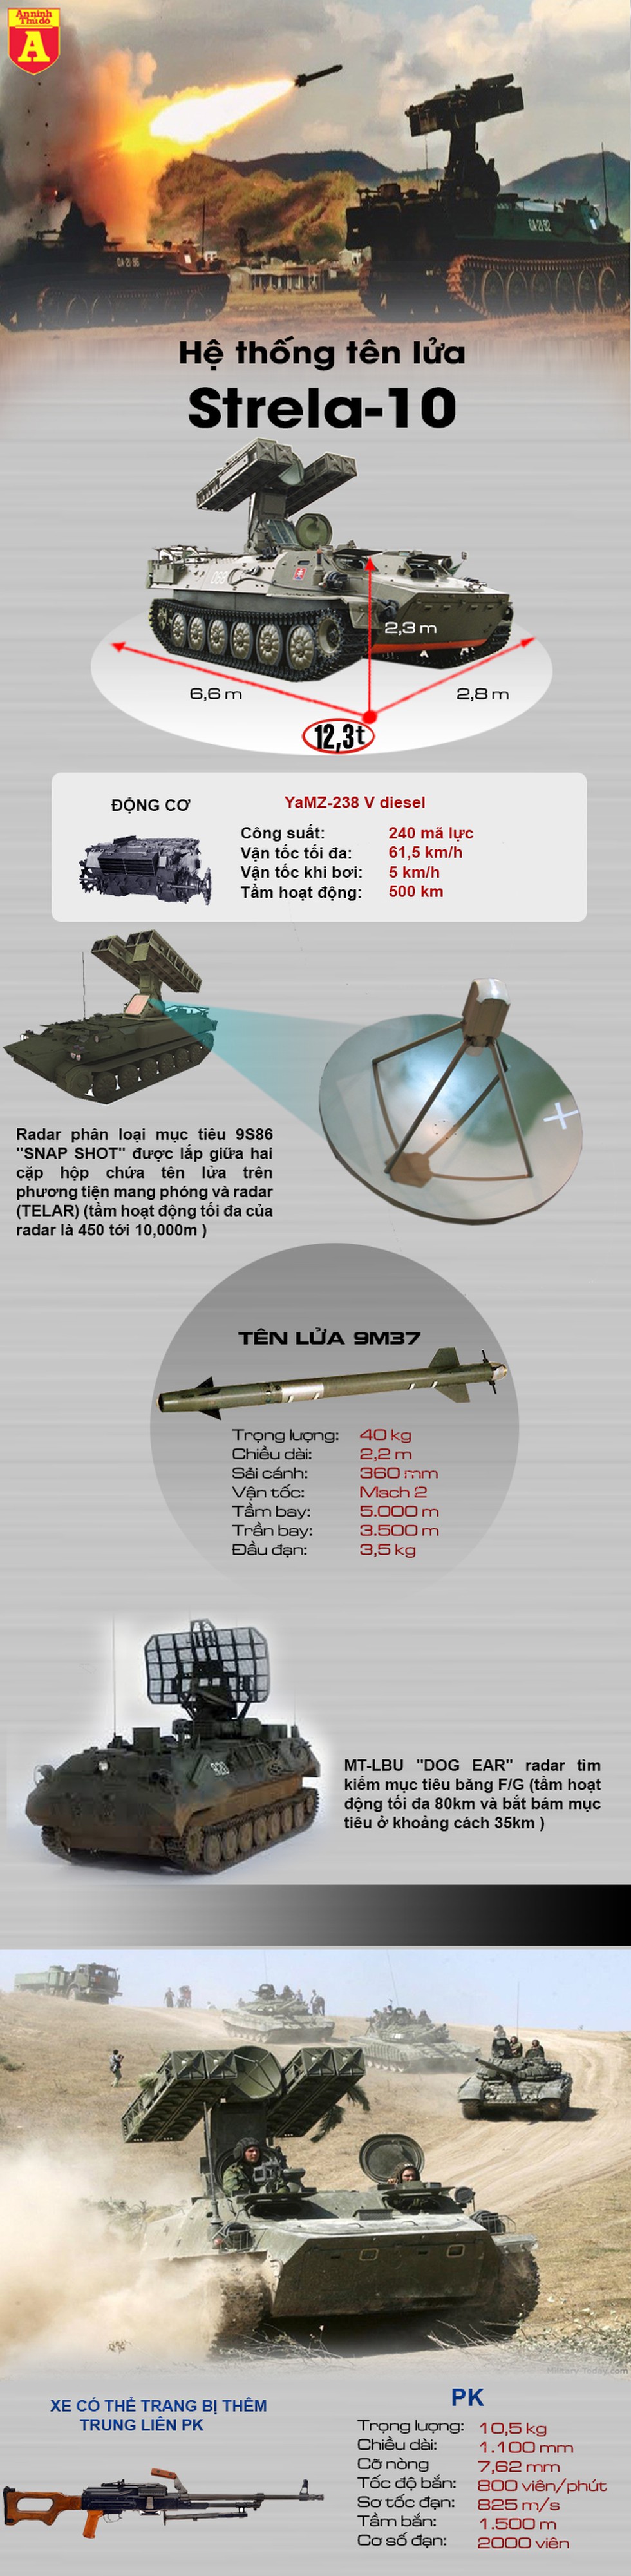 [Infographics] "Sát thủ" chuyên diệt UAV Thổ Nhĩ Kỳ tại Syria - Ảnh 1